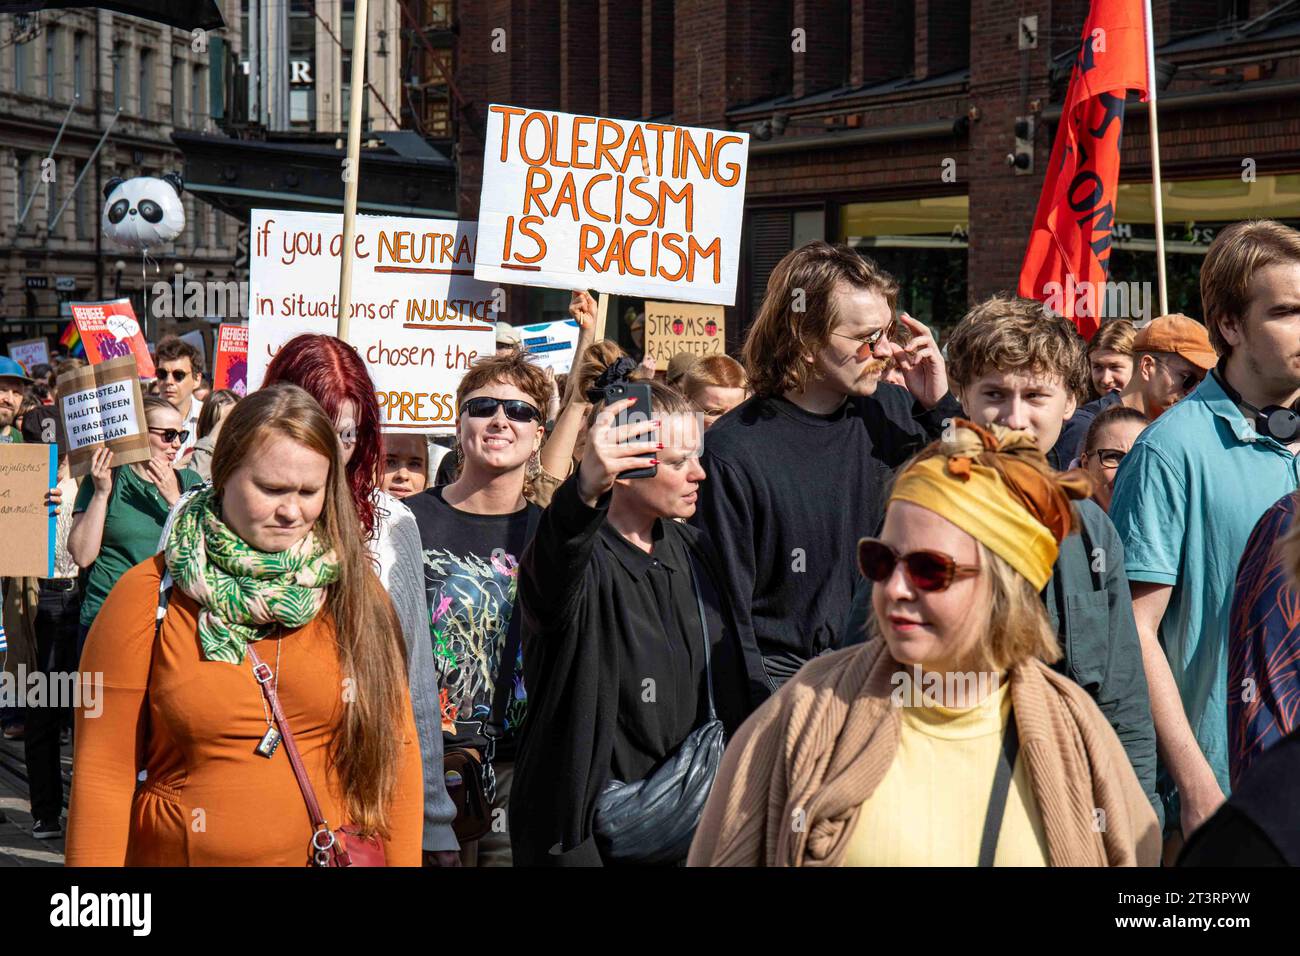 Rassismus zu tolerieren ist Rassismus. Demonstranten und handgemachte Schilder gegen mich emme vaikene! Antirassistische Demonstration in Helsinki, Finnland. Stockfoto